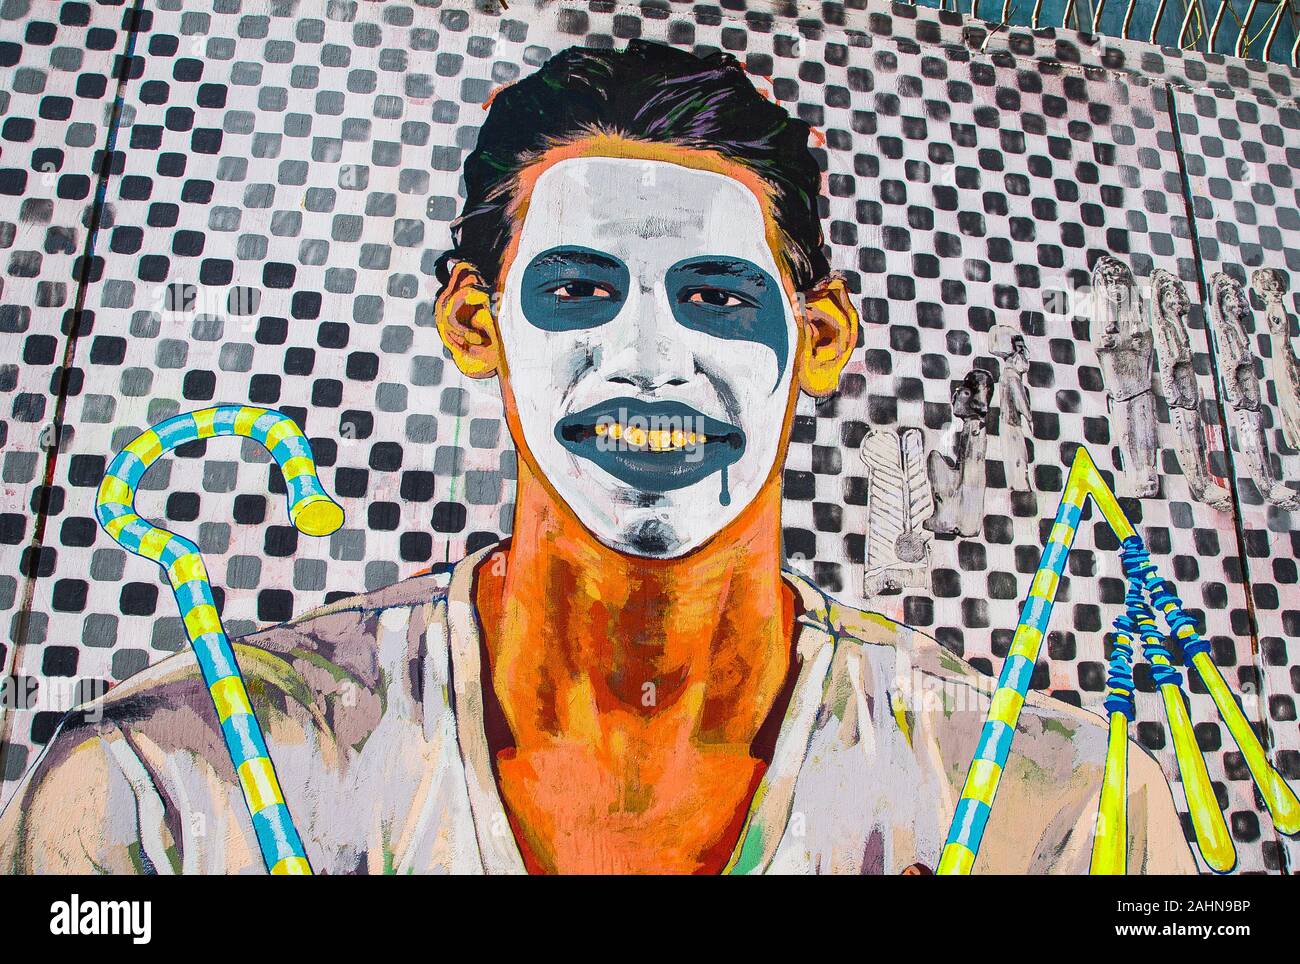 L'Egitto, al Cairo, graffiti della rivoluzione egiziana su Mohamed Mahmoud Street. Un uomo con una maschera da clown contiene i segni della regalità nell'Antico Egitto. Foto Stock